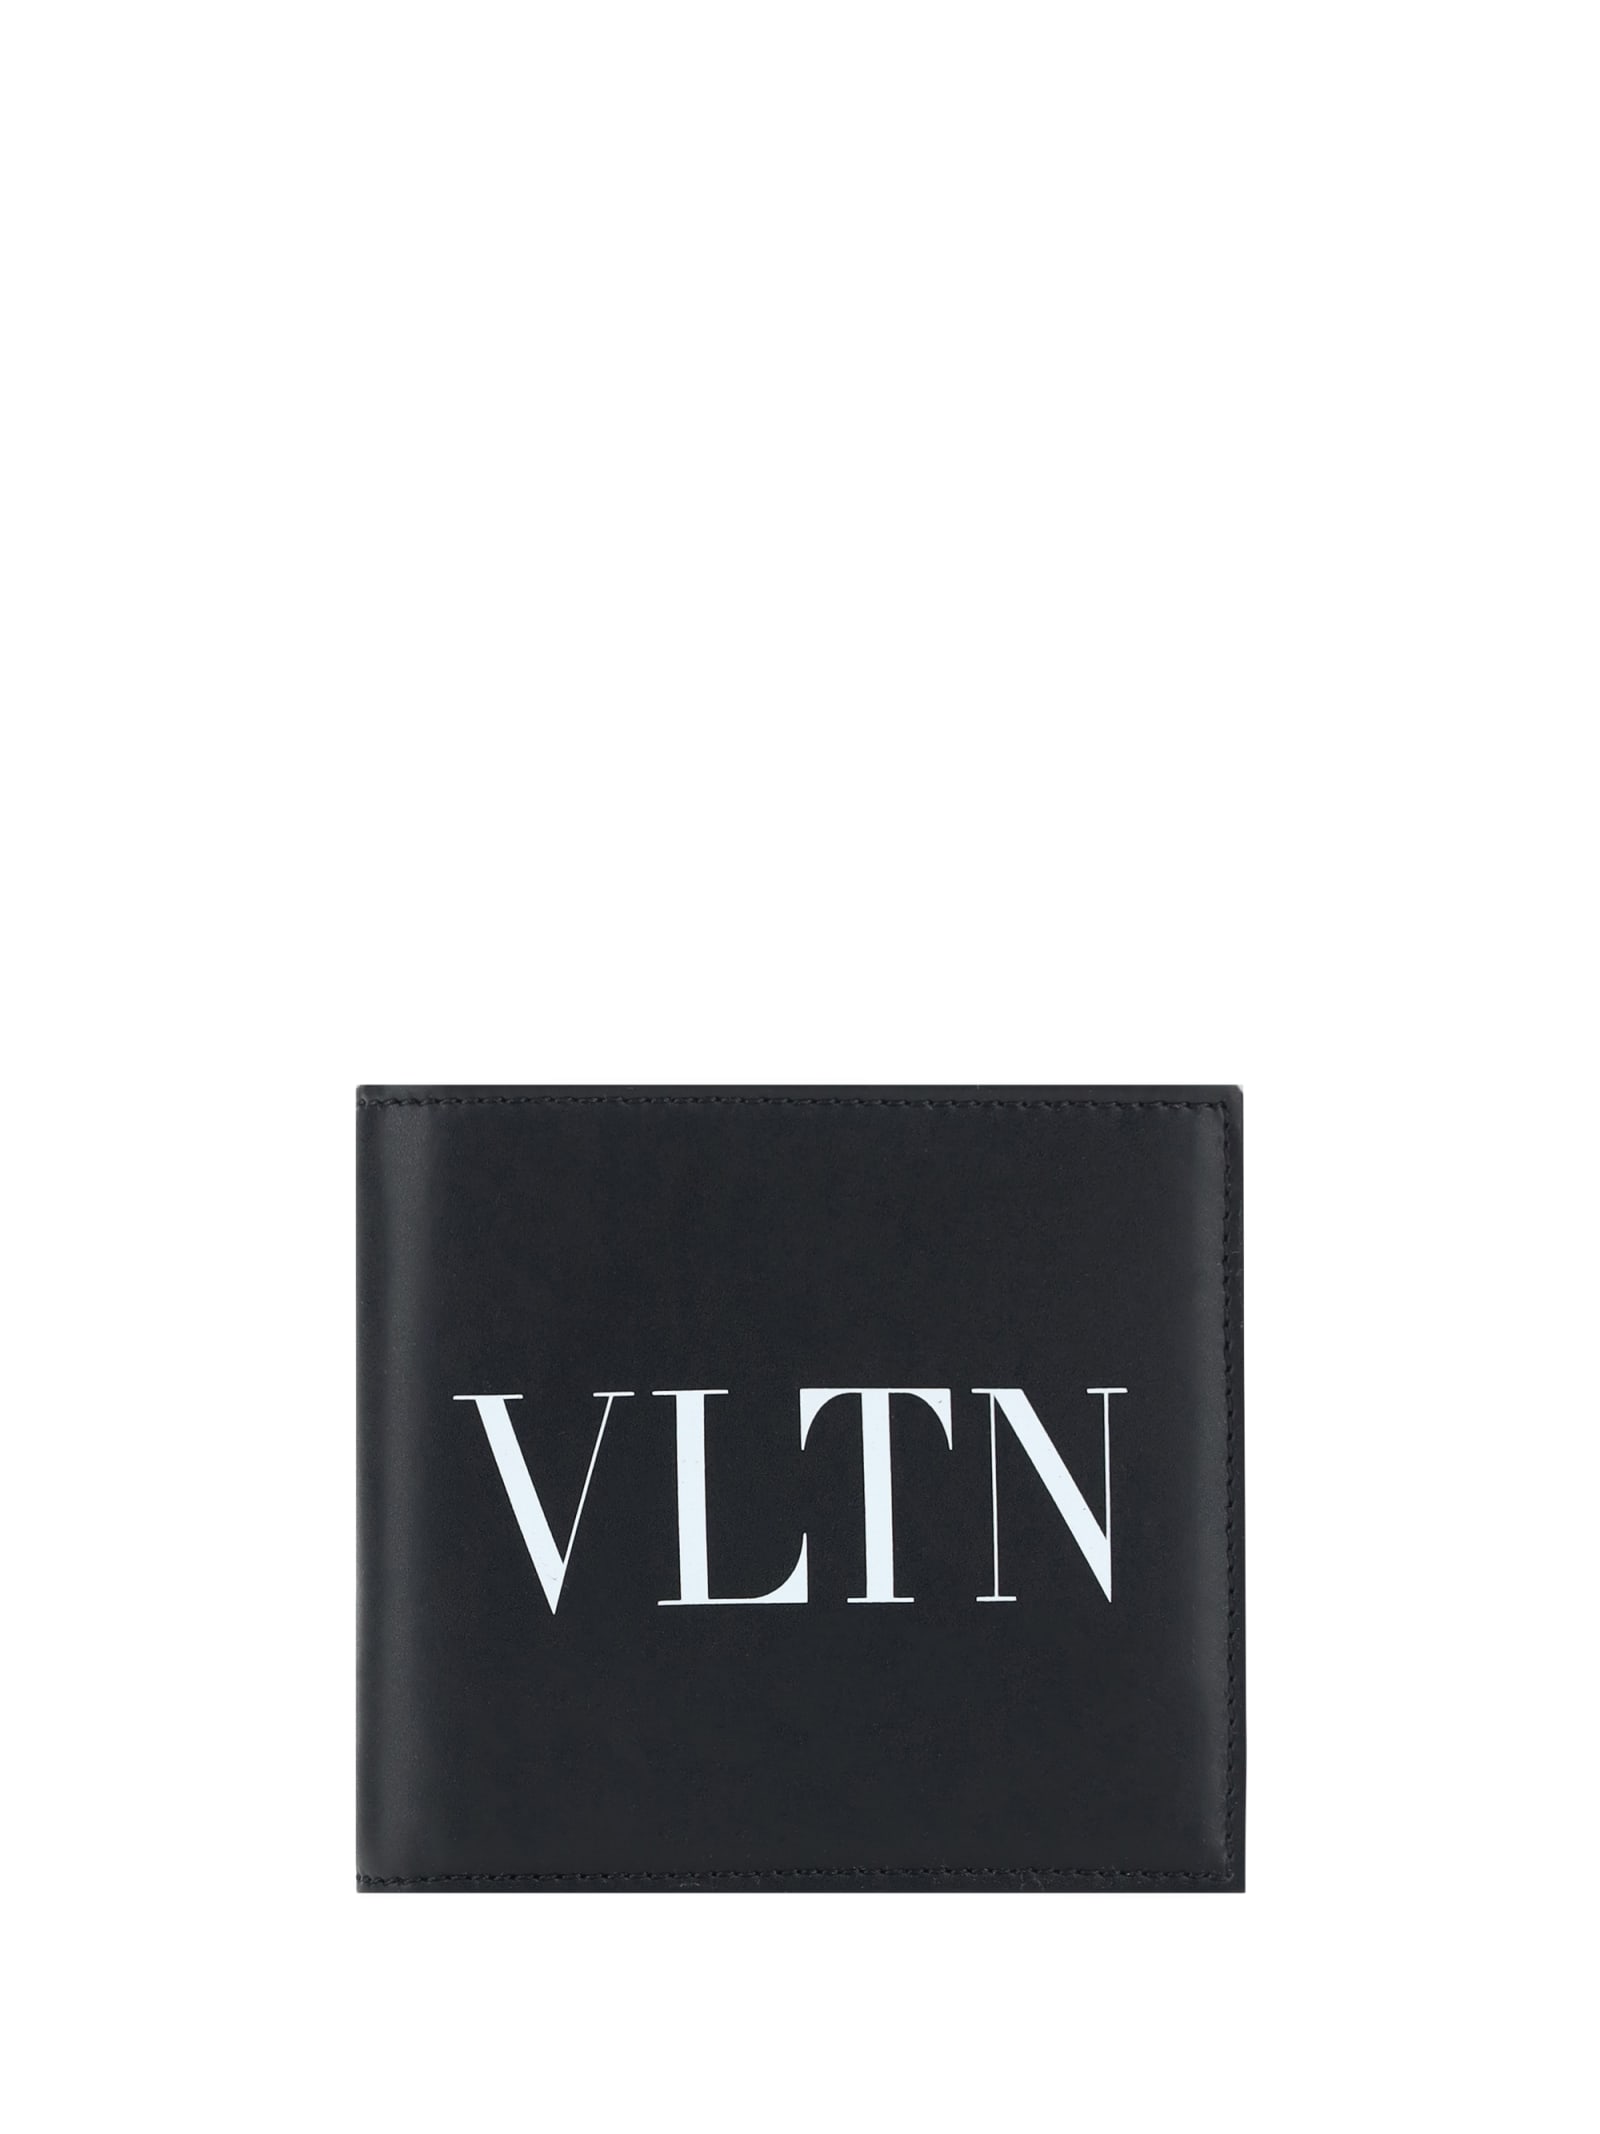 Valentino Garavani Vltn Wallet In Black